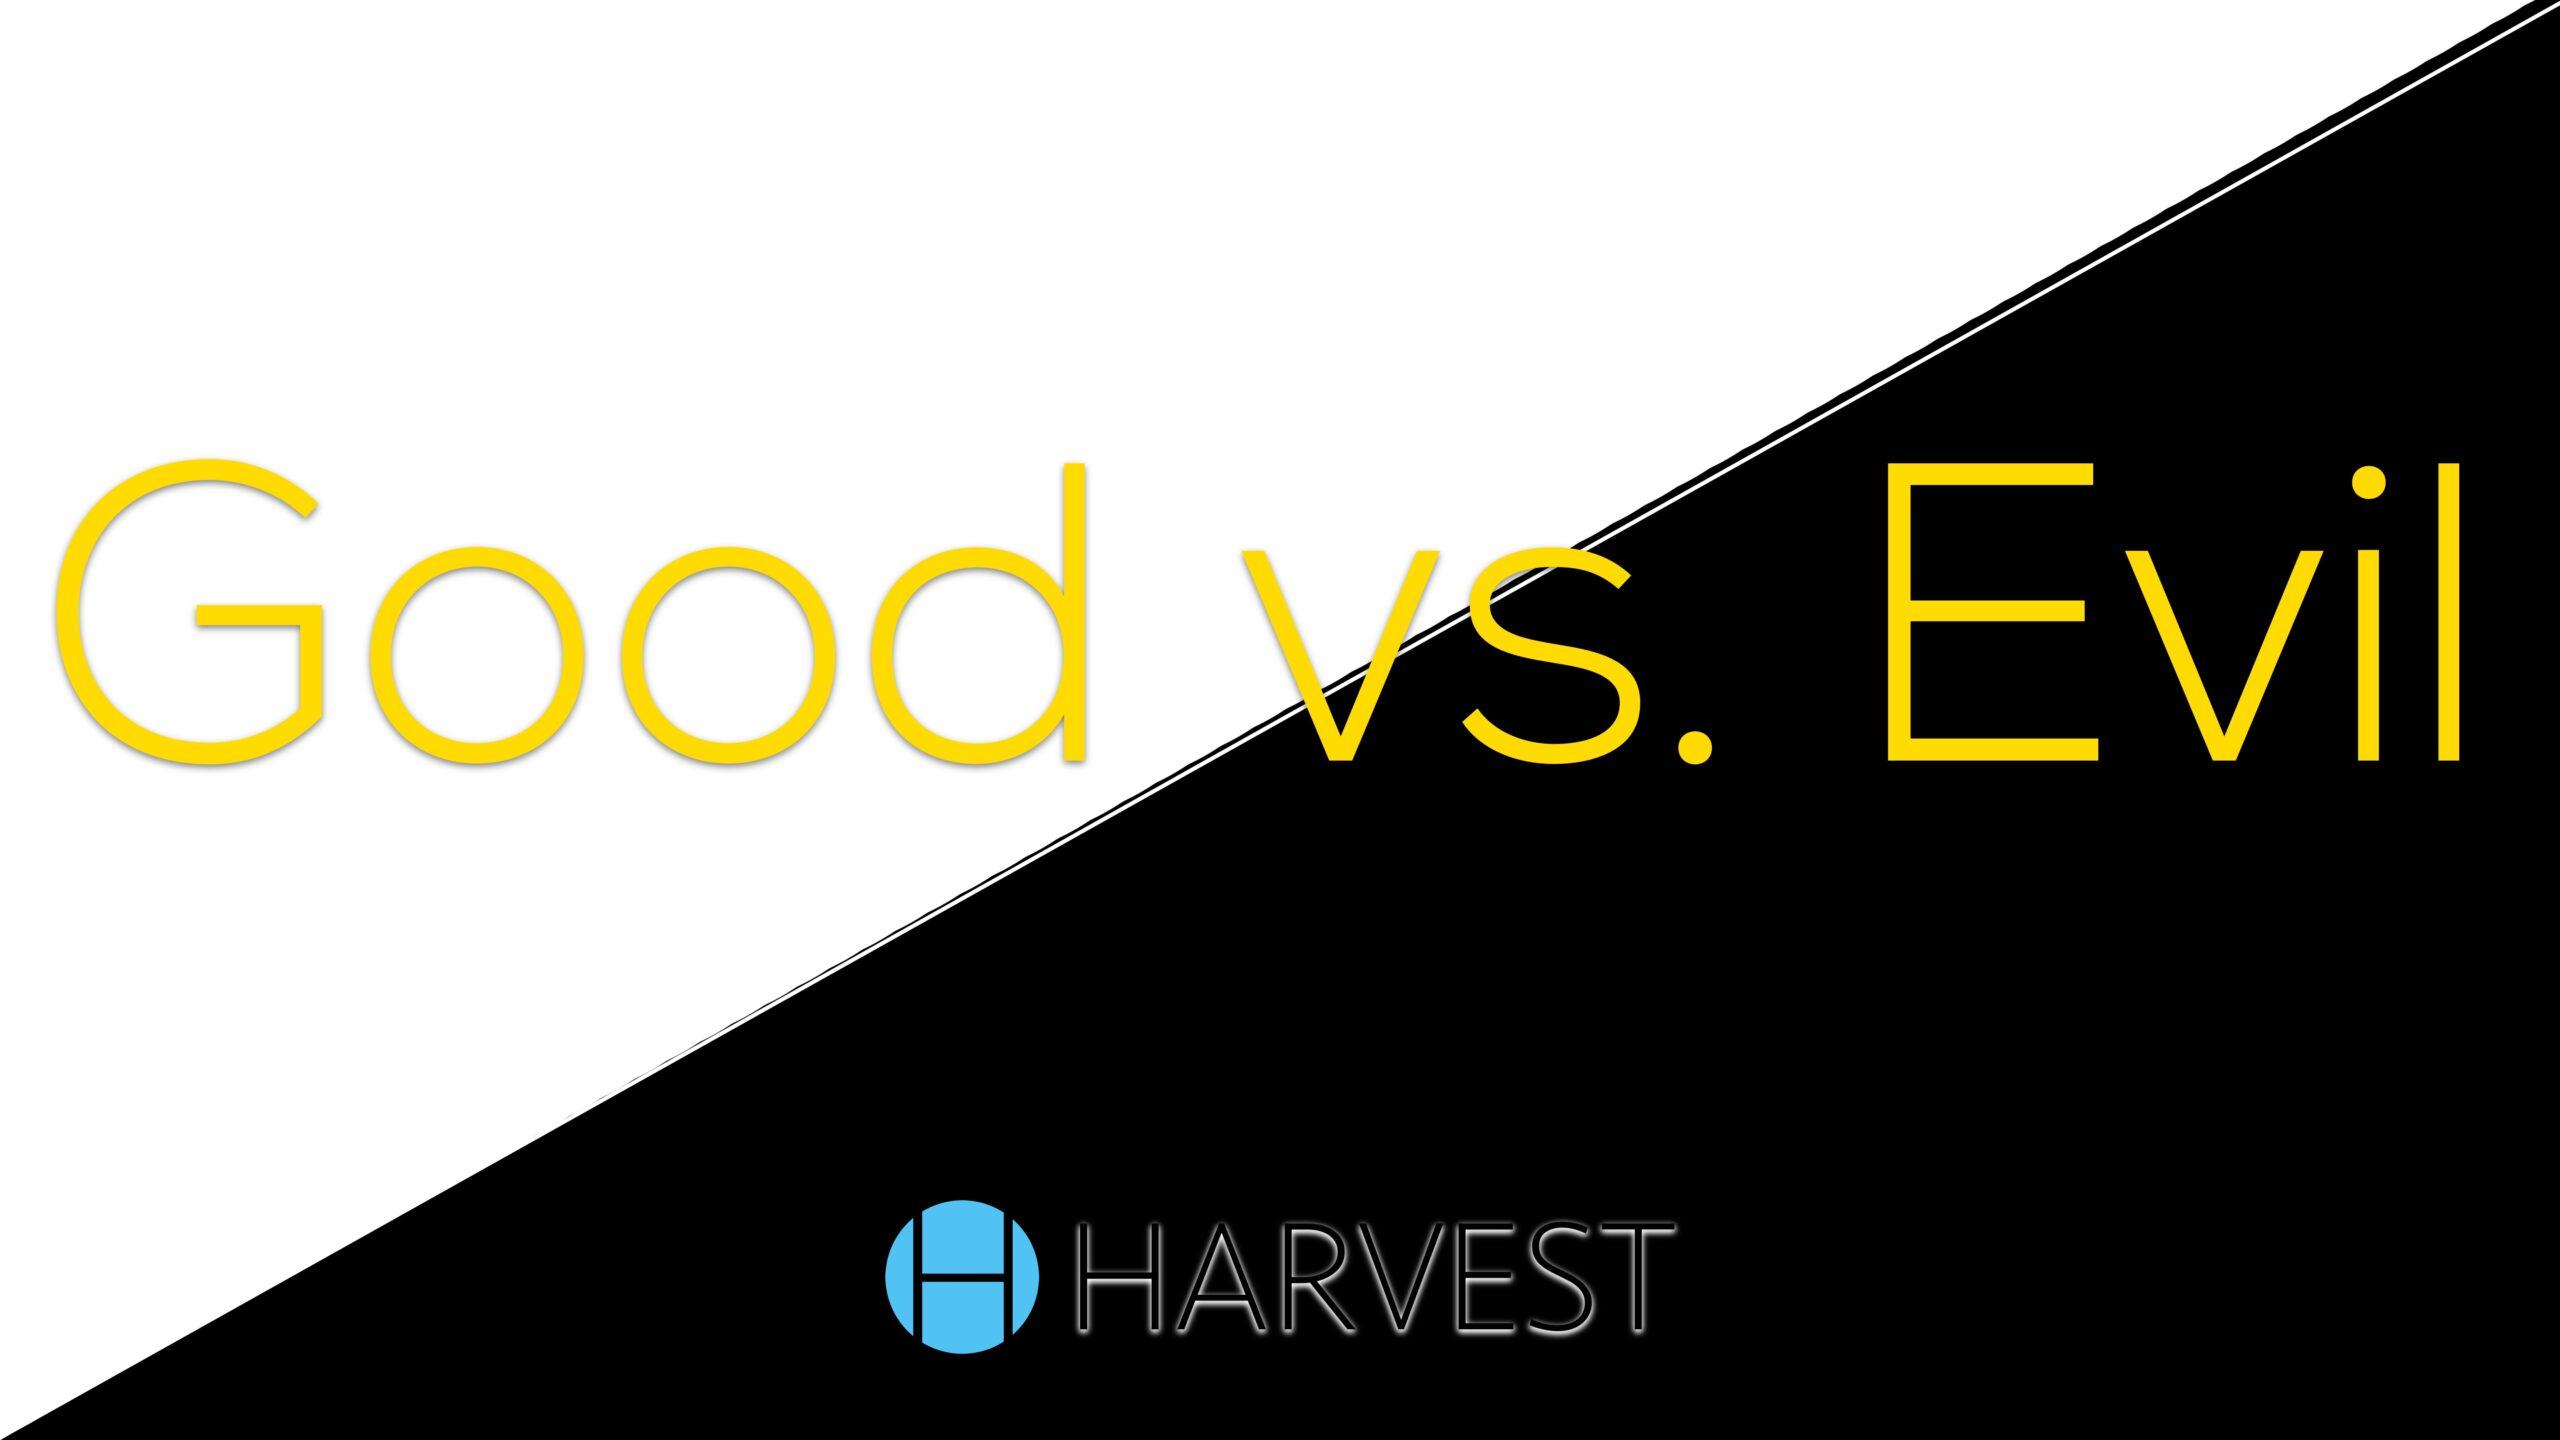 Good vs. Evil?